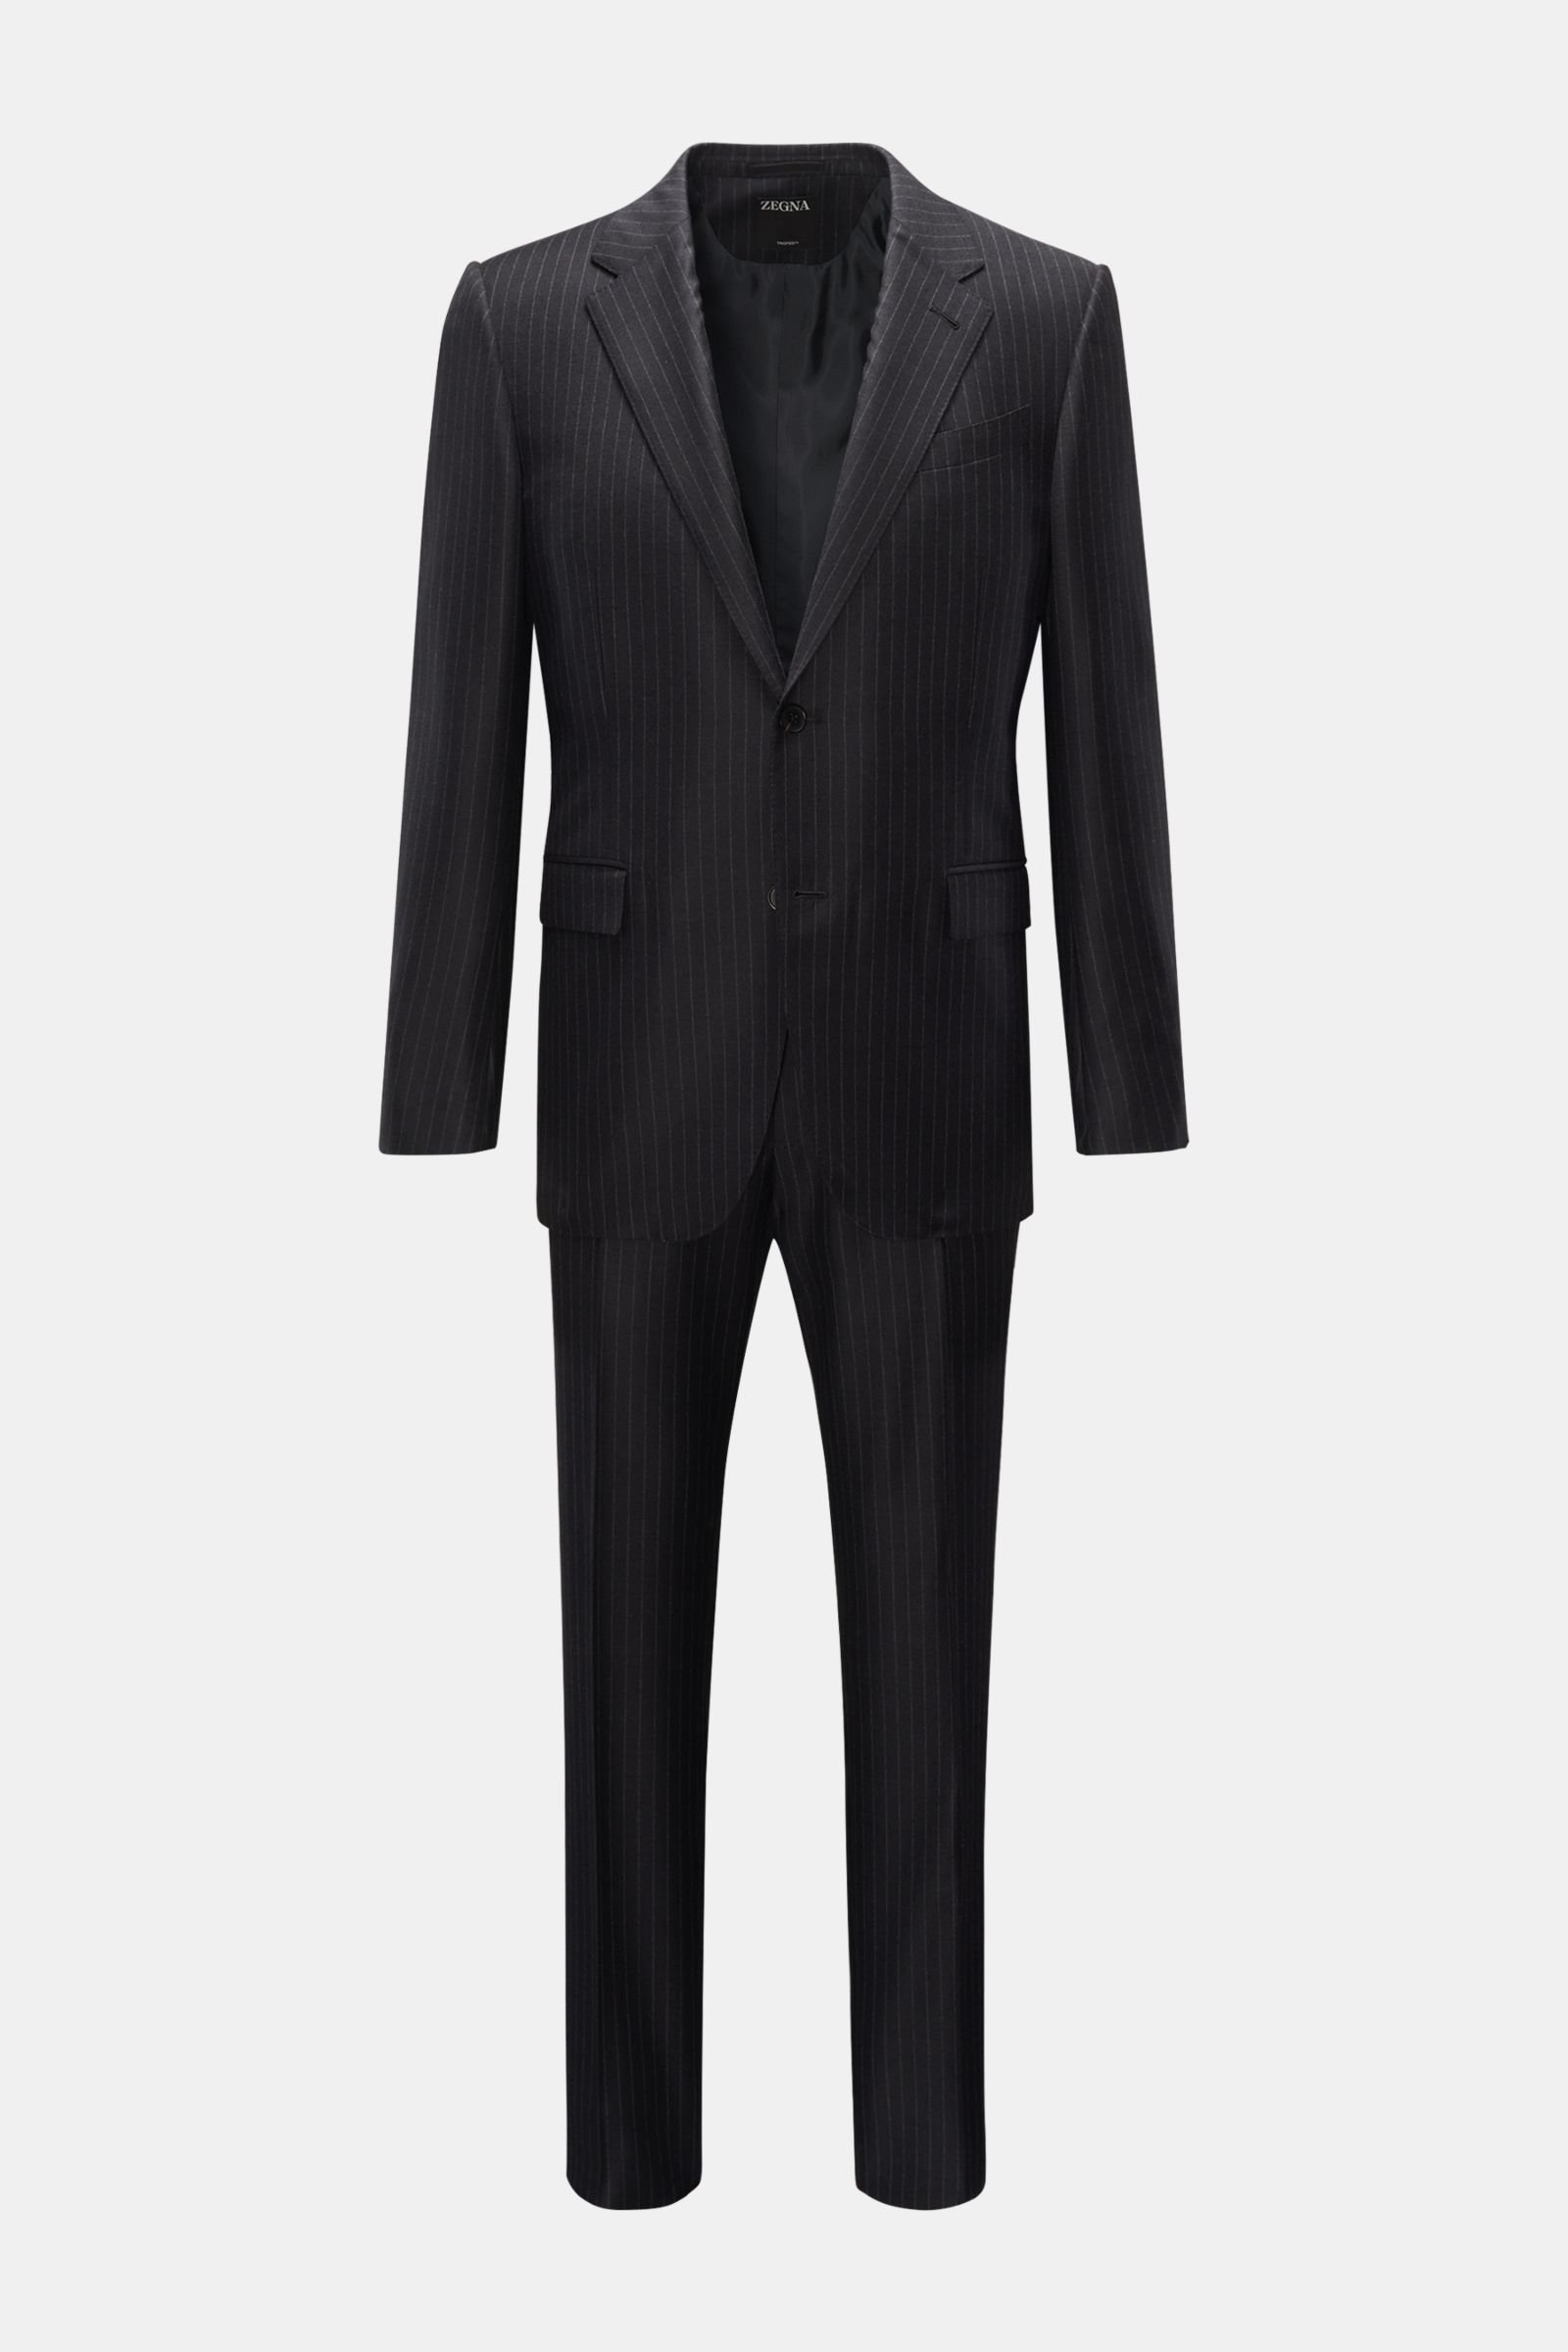 Zegna Men's Sartorial Suit